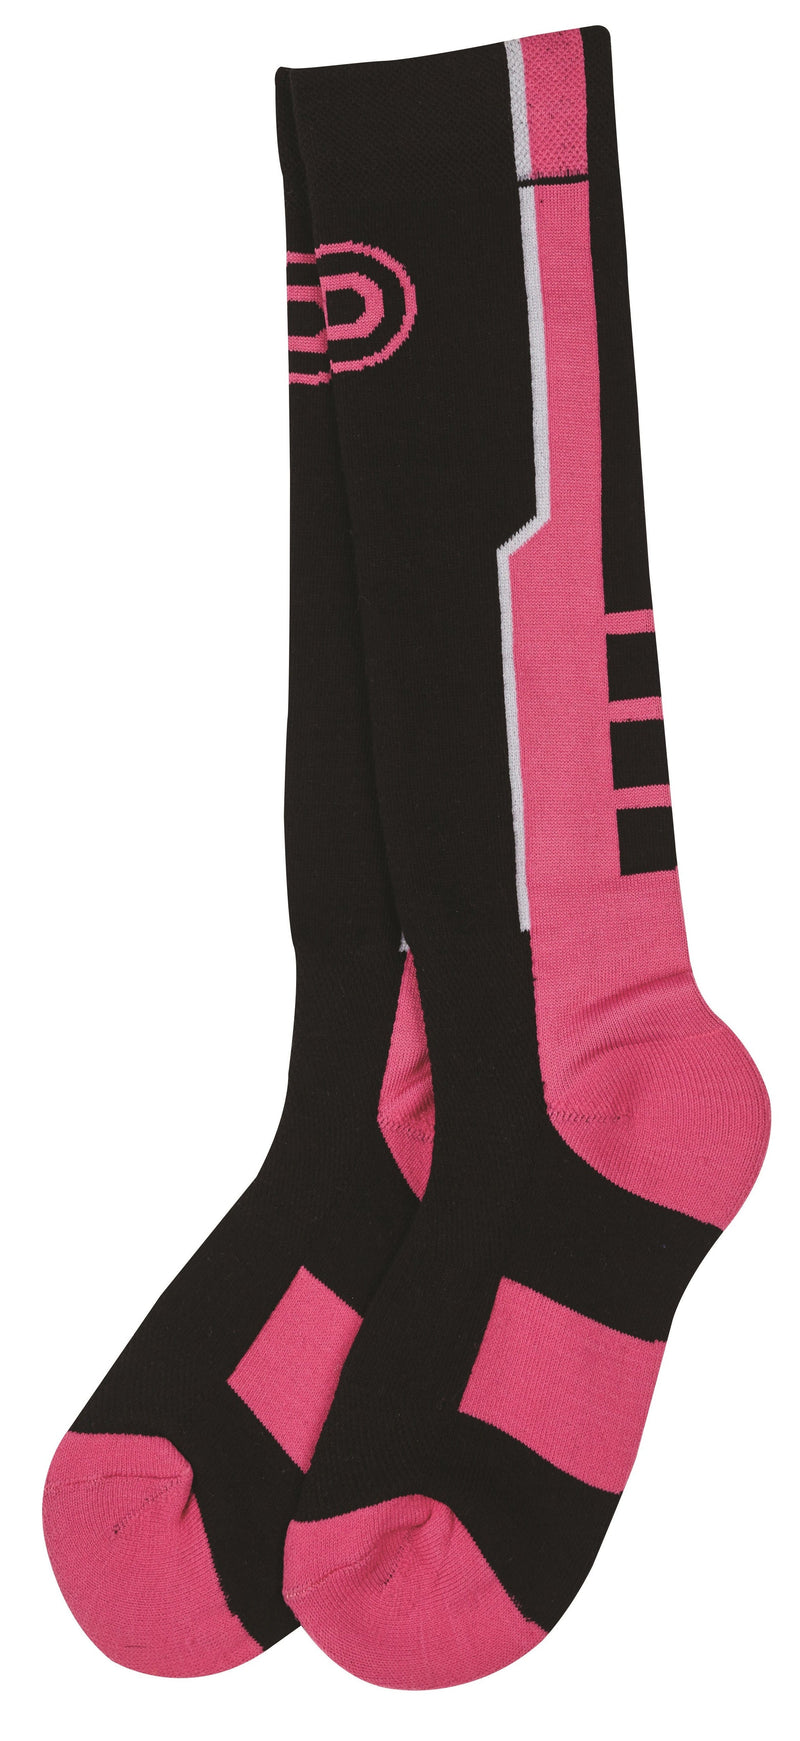 Dublin Active-Tec Adults Socks Socks Dublin Pink Small/Medium 